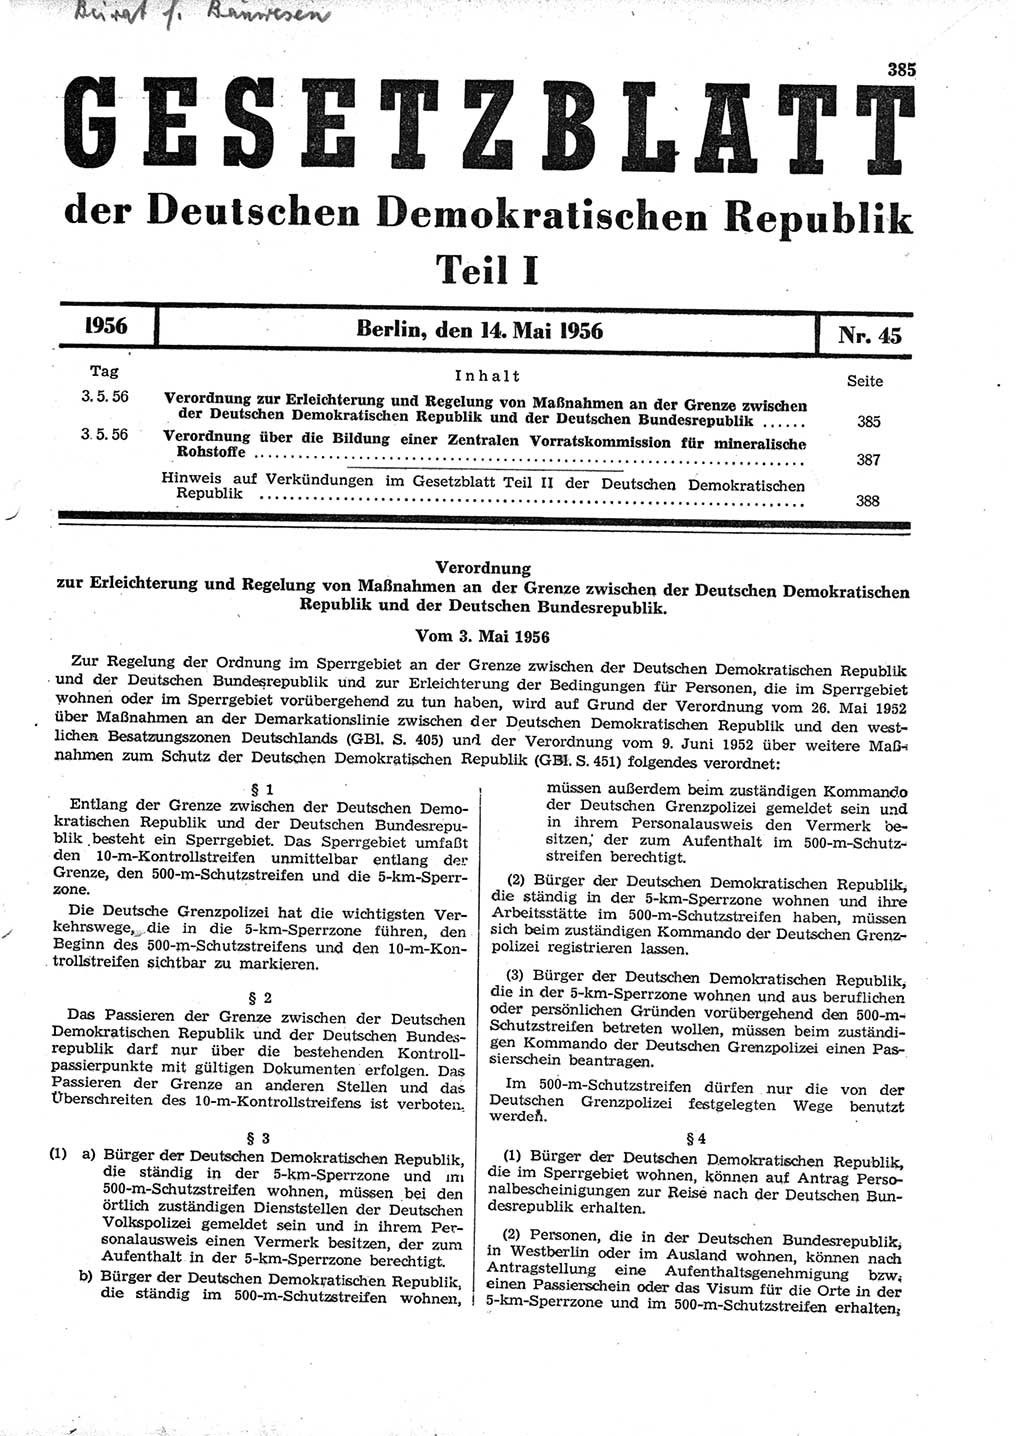 Gesetzblatt (GBl.) der Deutschen Demokratischen Republik (DDR) Teil Ⅰ 1956, Seite 385 (GBl. DDR Ⅰ 1956, S. 385)